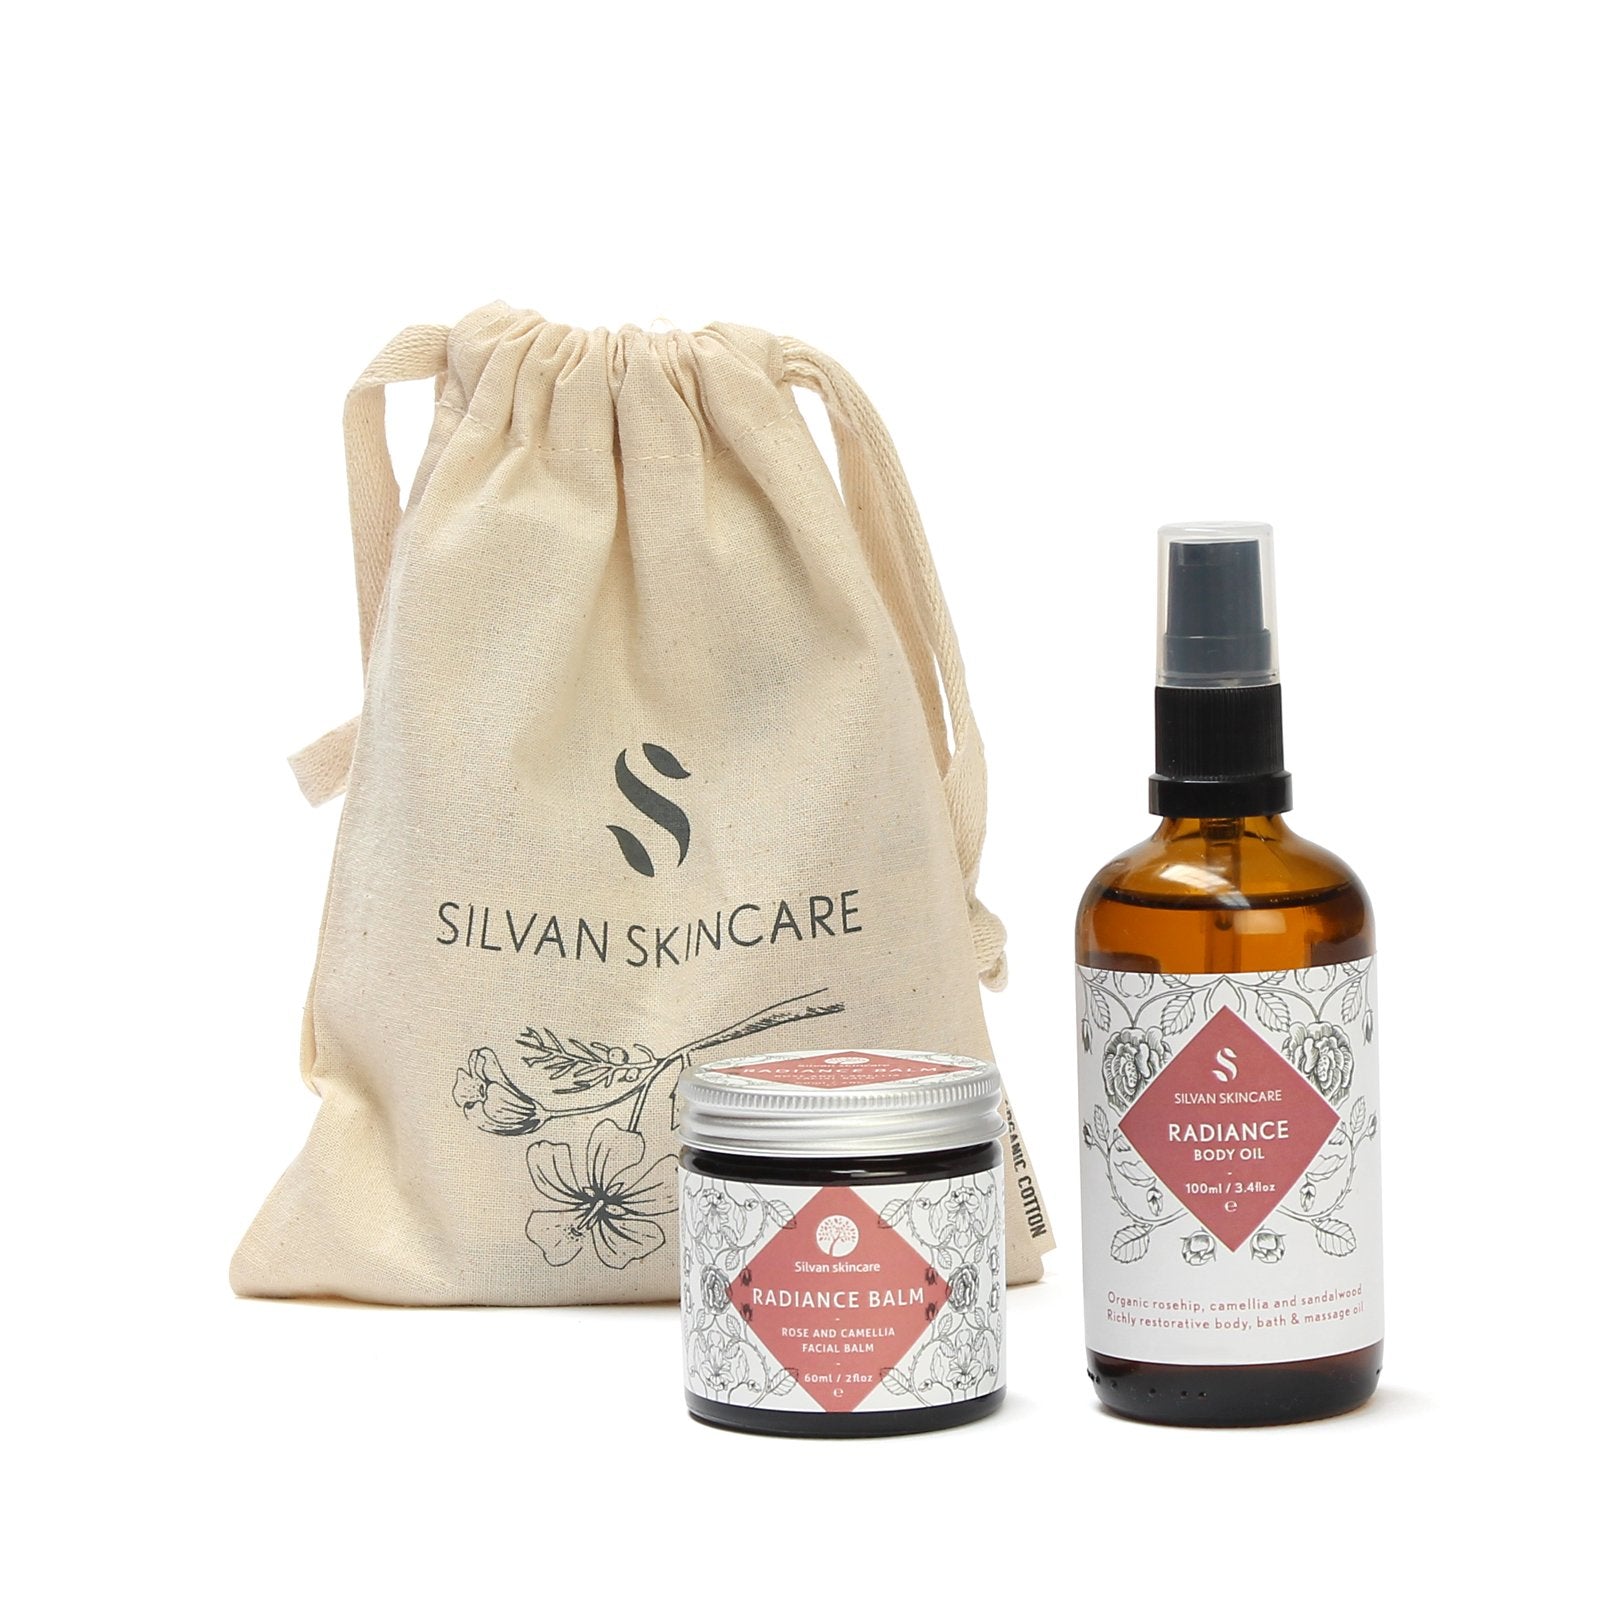 Silvan Skincare Radiance Gift Set. Vegan gifts